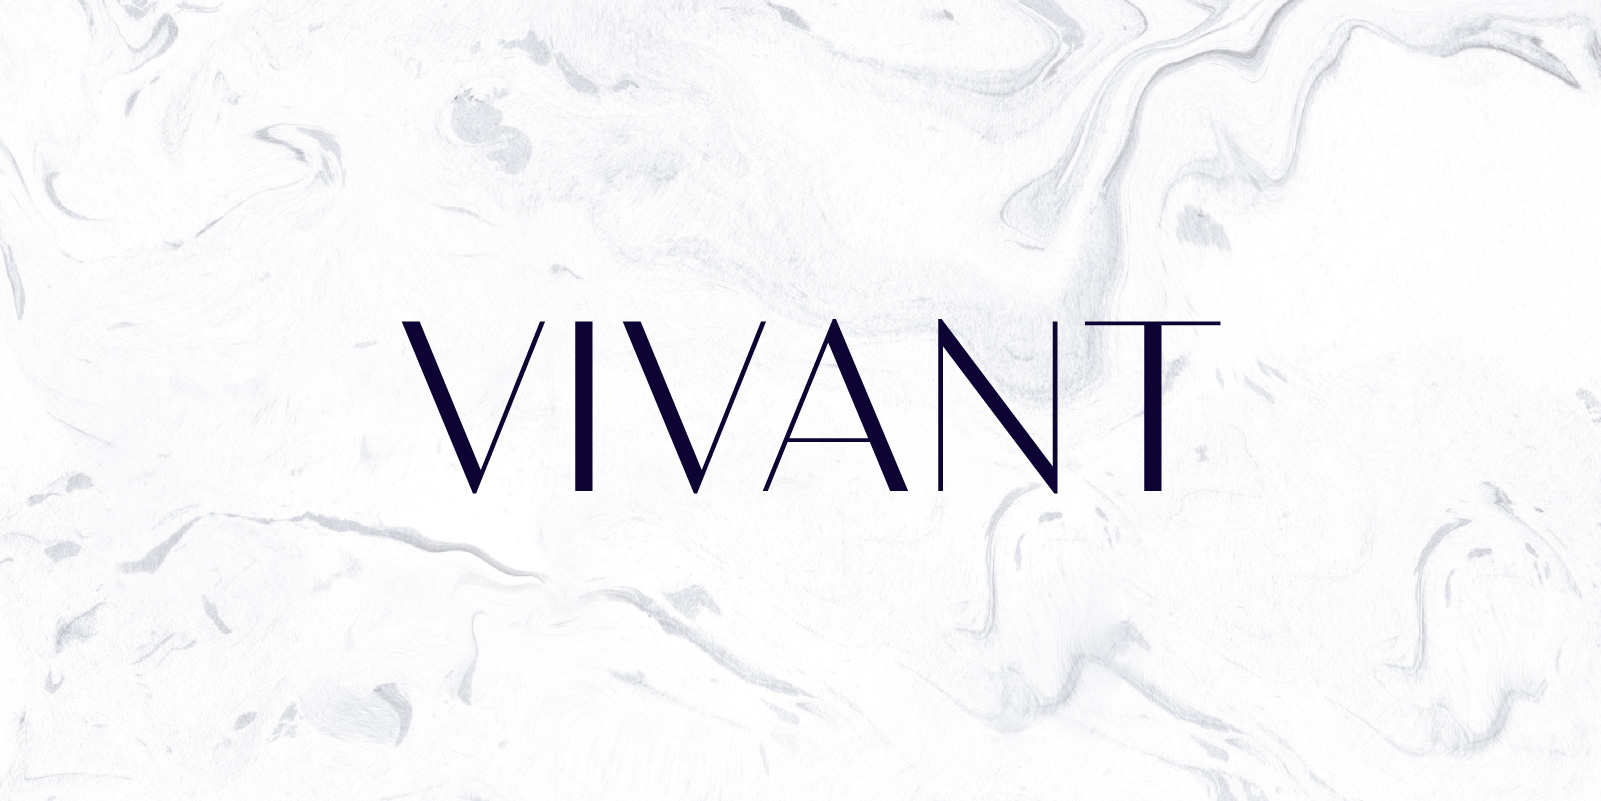 Meet Bw Vivant: a stylish & minimal typeface